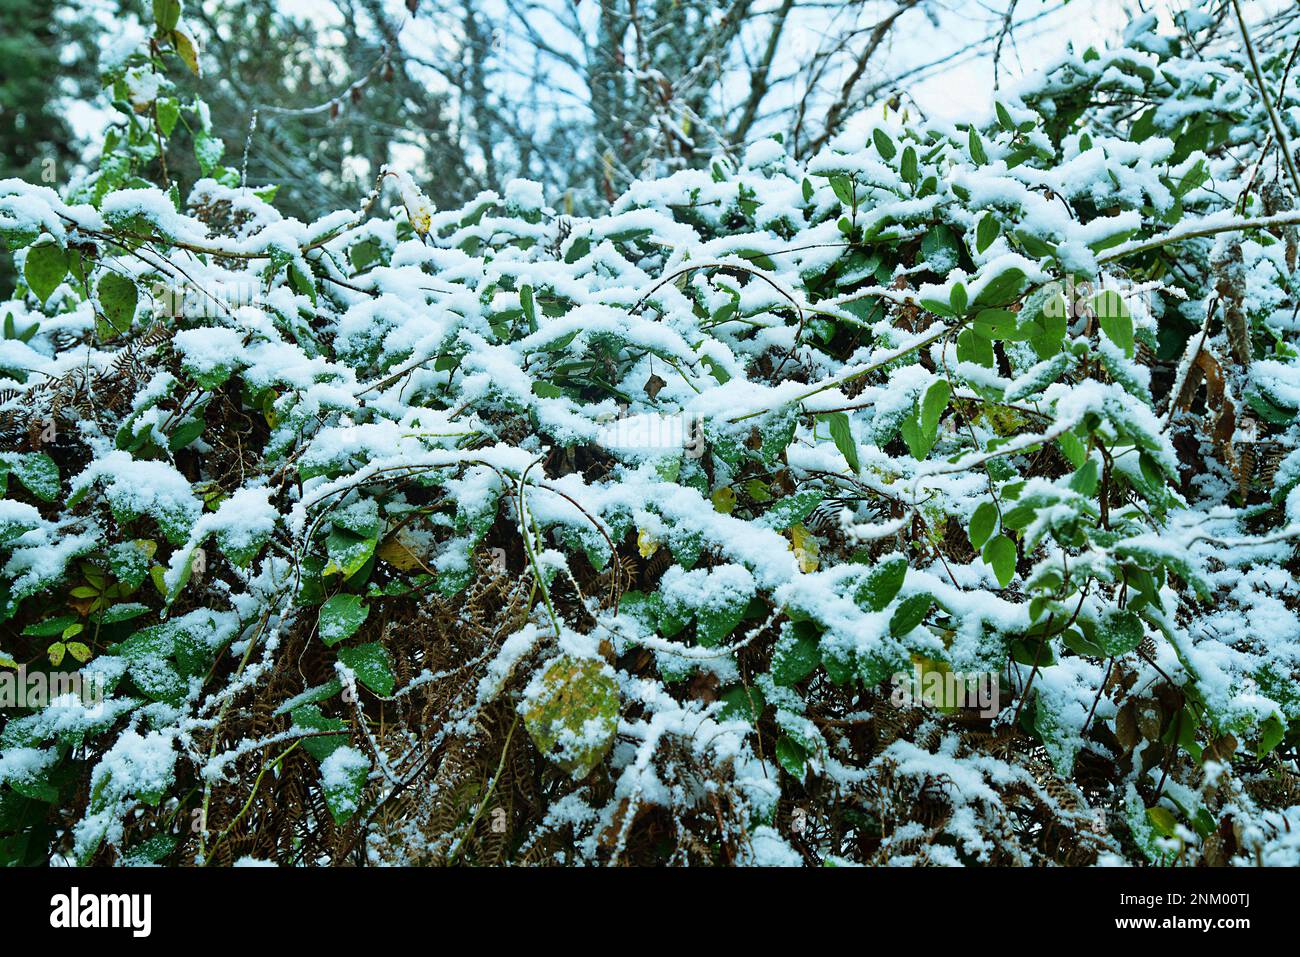 Früher Schnee. Herbstdickichte aus Brombeeren, Clematis und anderen Lianen sind mit Schnee bedeckt, der für den Süden unerwartet ist Stockfoto